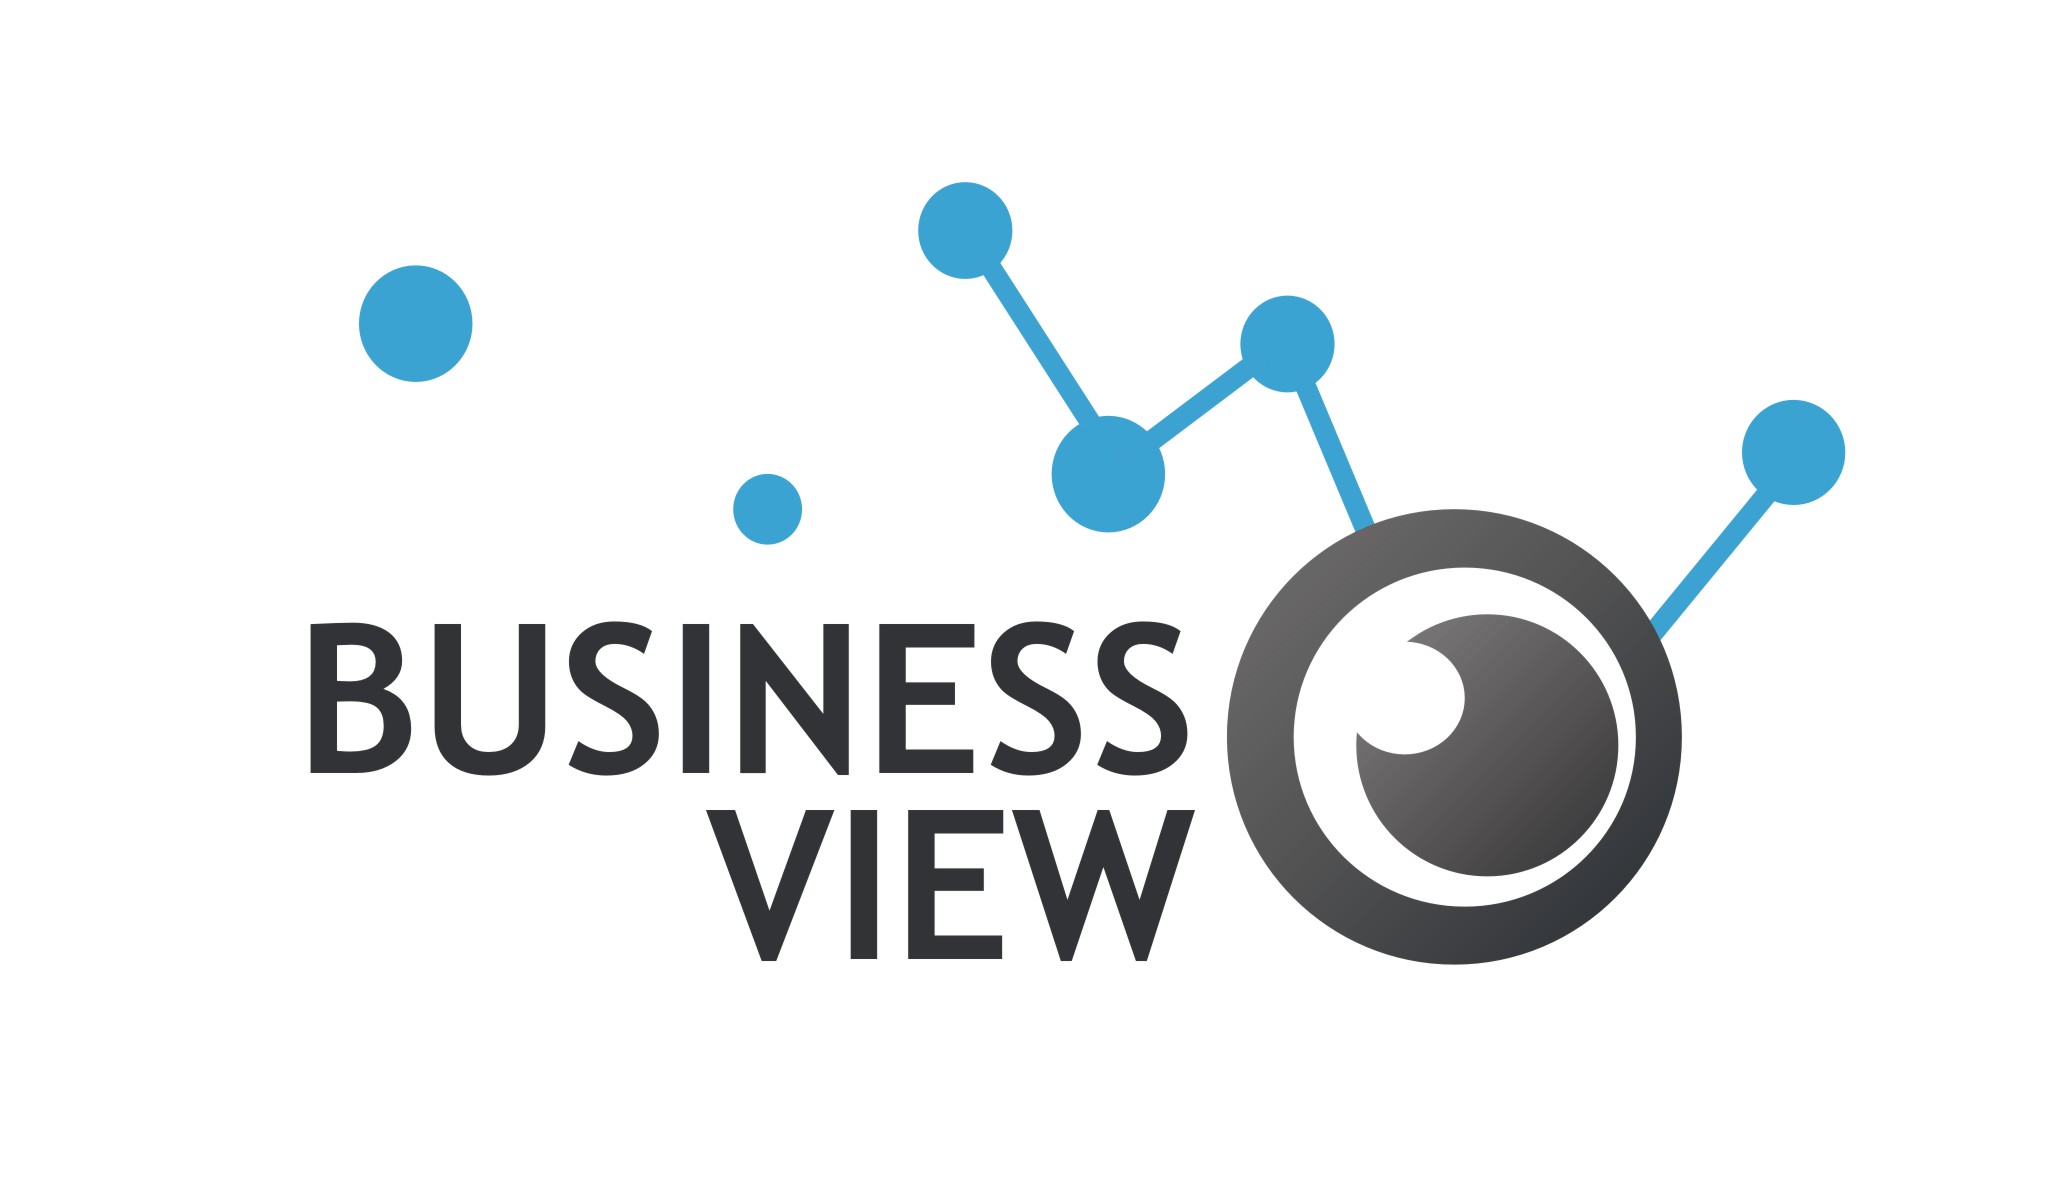 BusinessView Software